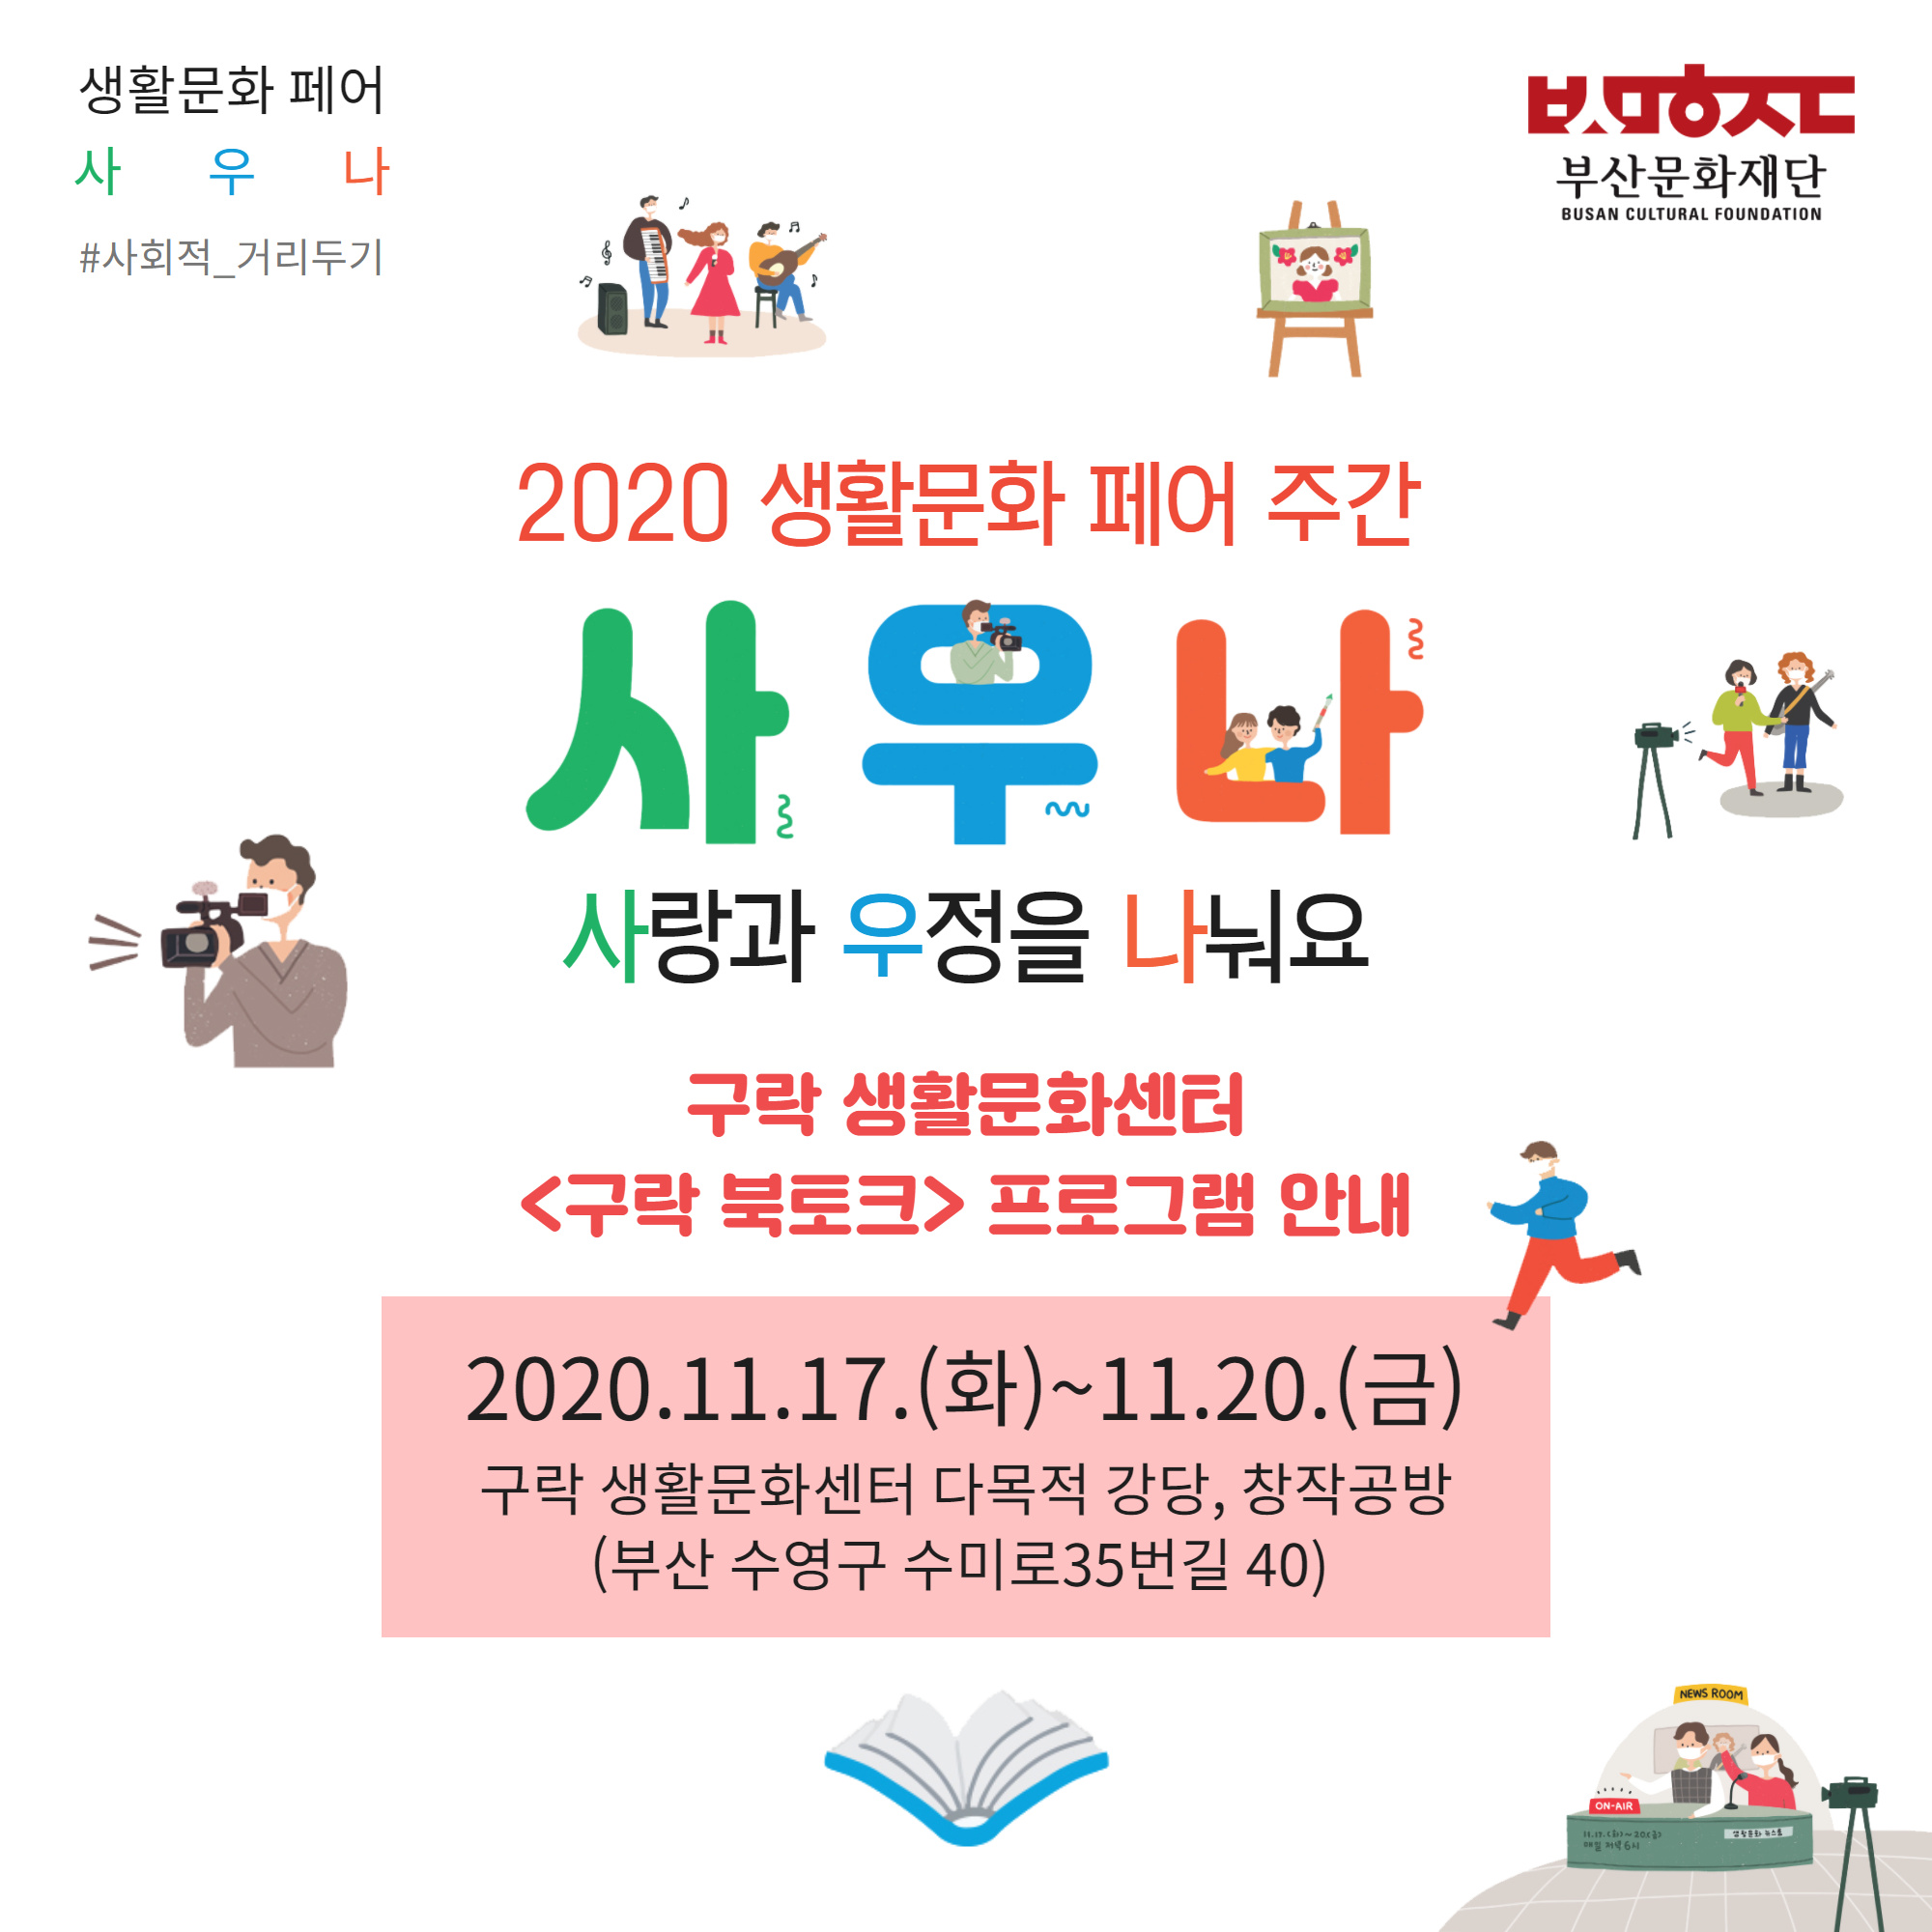 2020 생활문화페어 주간 <구락 북토크> 행사 홍보 1